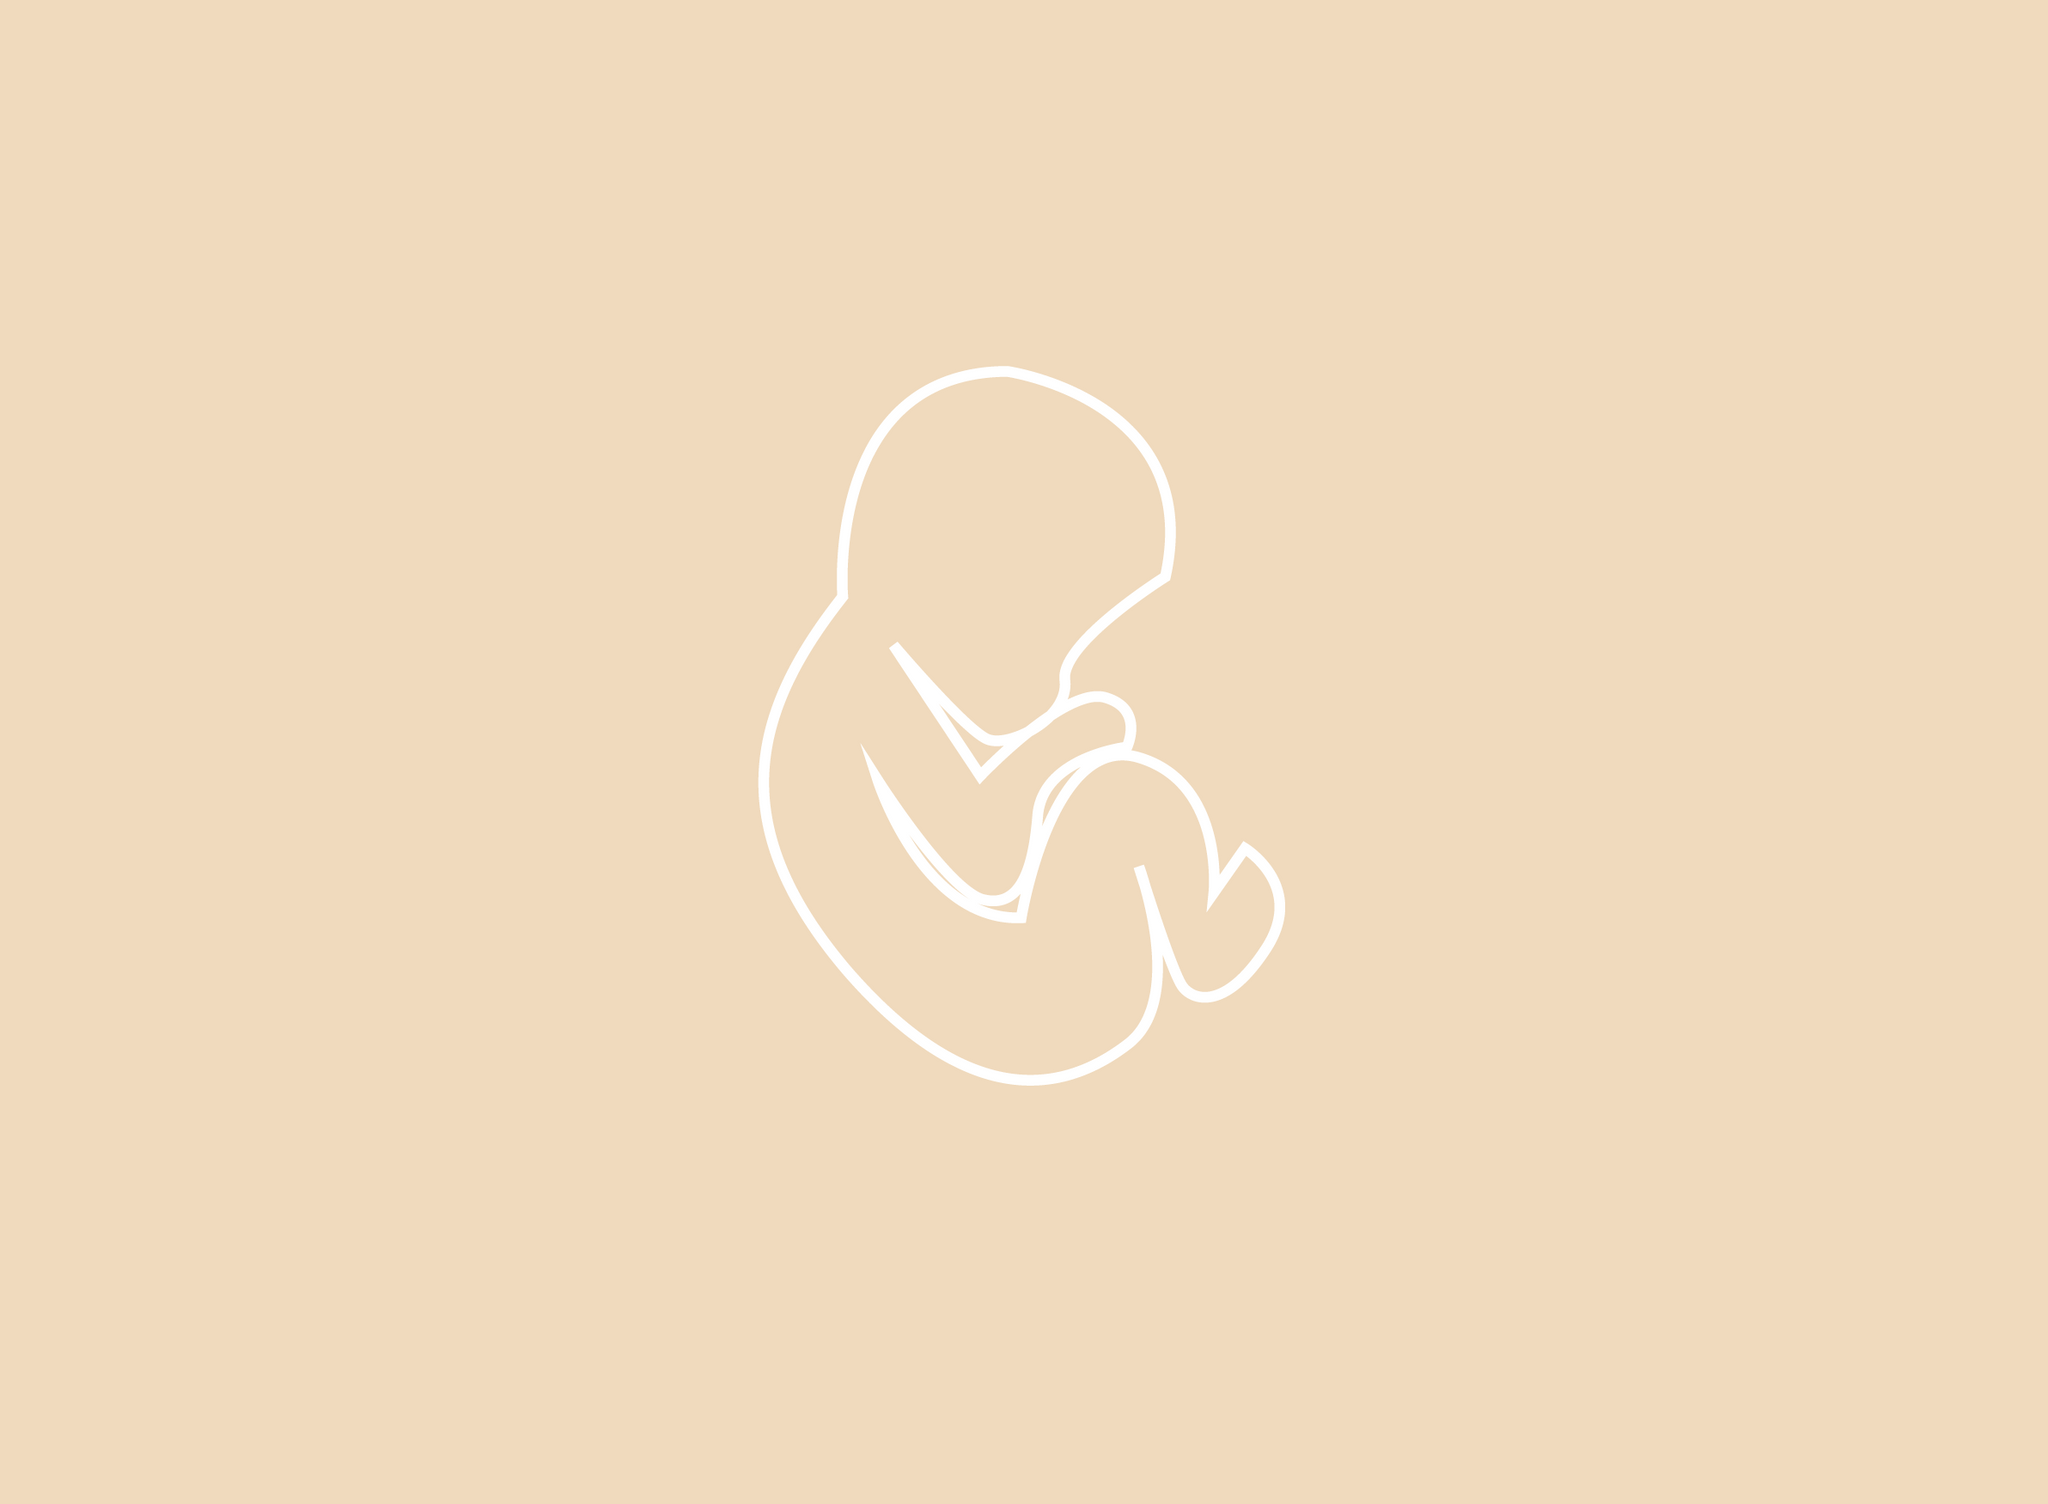 fetus illustration